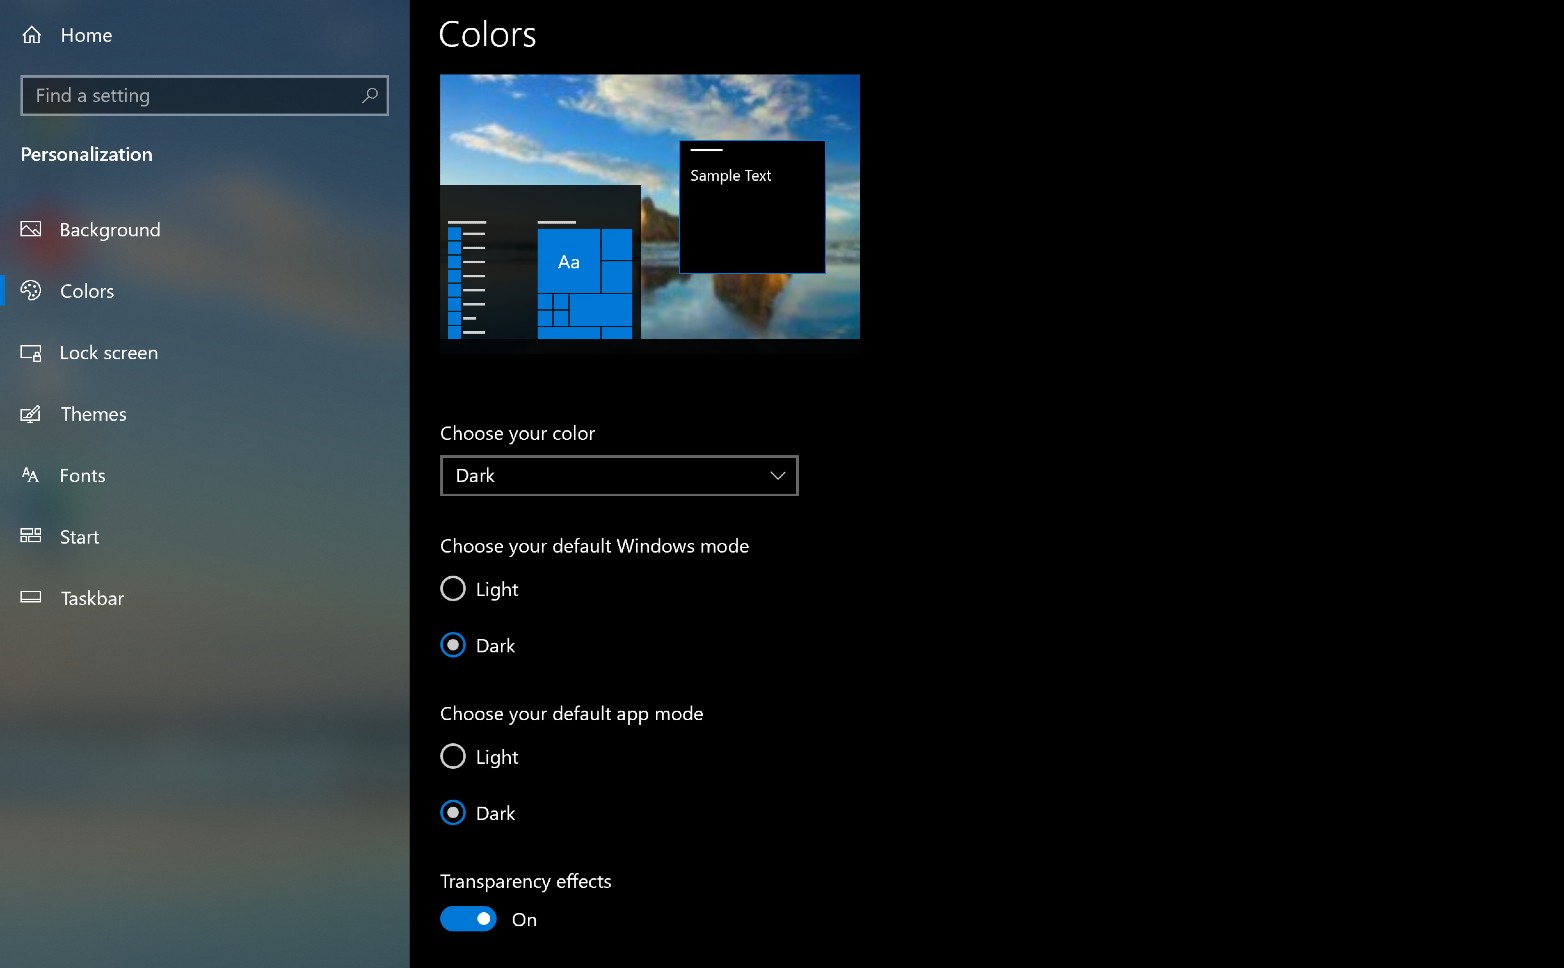 Chỉ với vài thao tác đơn giản, bạn có thể tùy chỉnh Menu bắt đầu Windows 10 theo ý thích và sử dụng nó một cách tiện lợi. Hãy xem ngay hình ảnh liên quan để biết thêm cách tùy chỉnh và sử dụng Menu bắt đầu Windows 10.